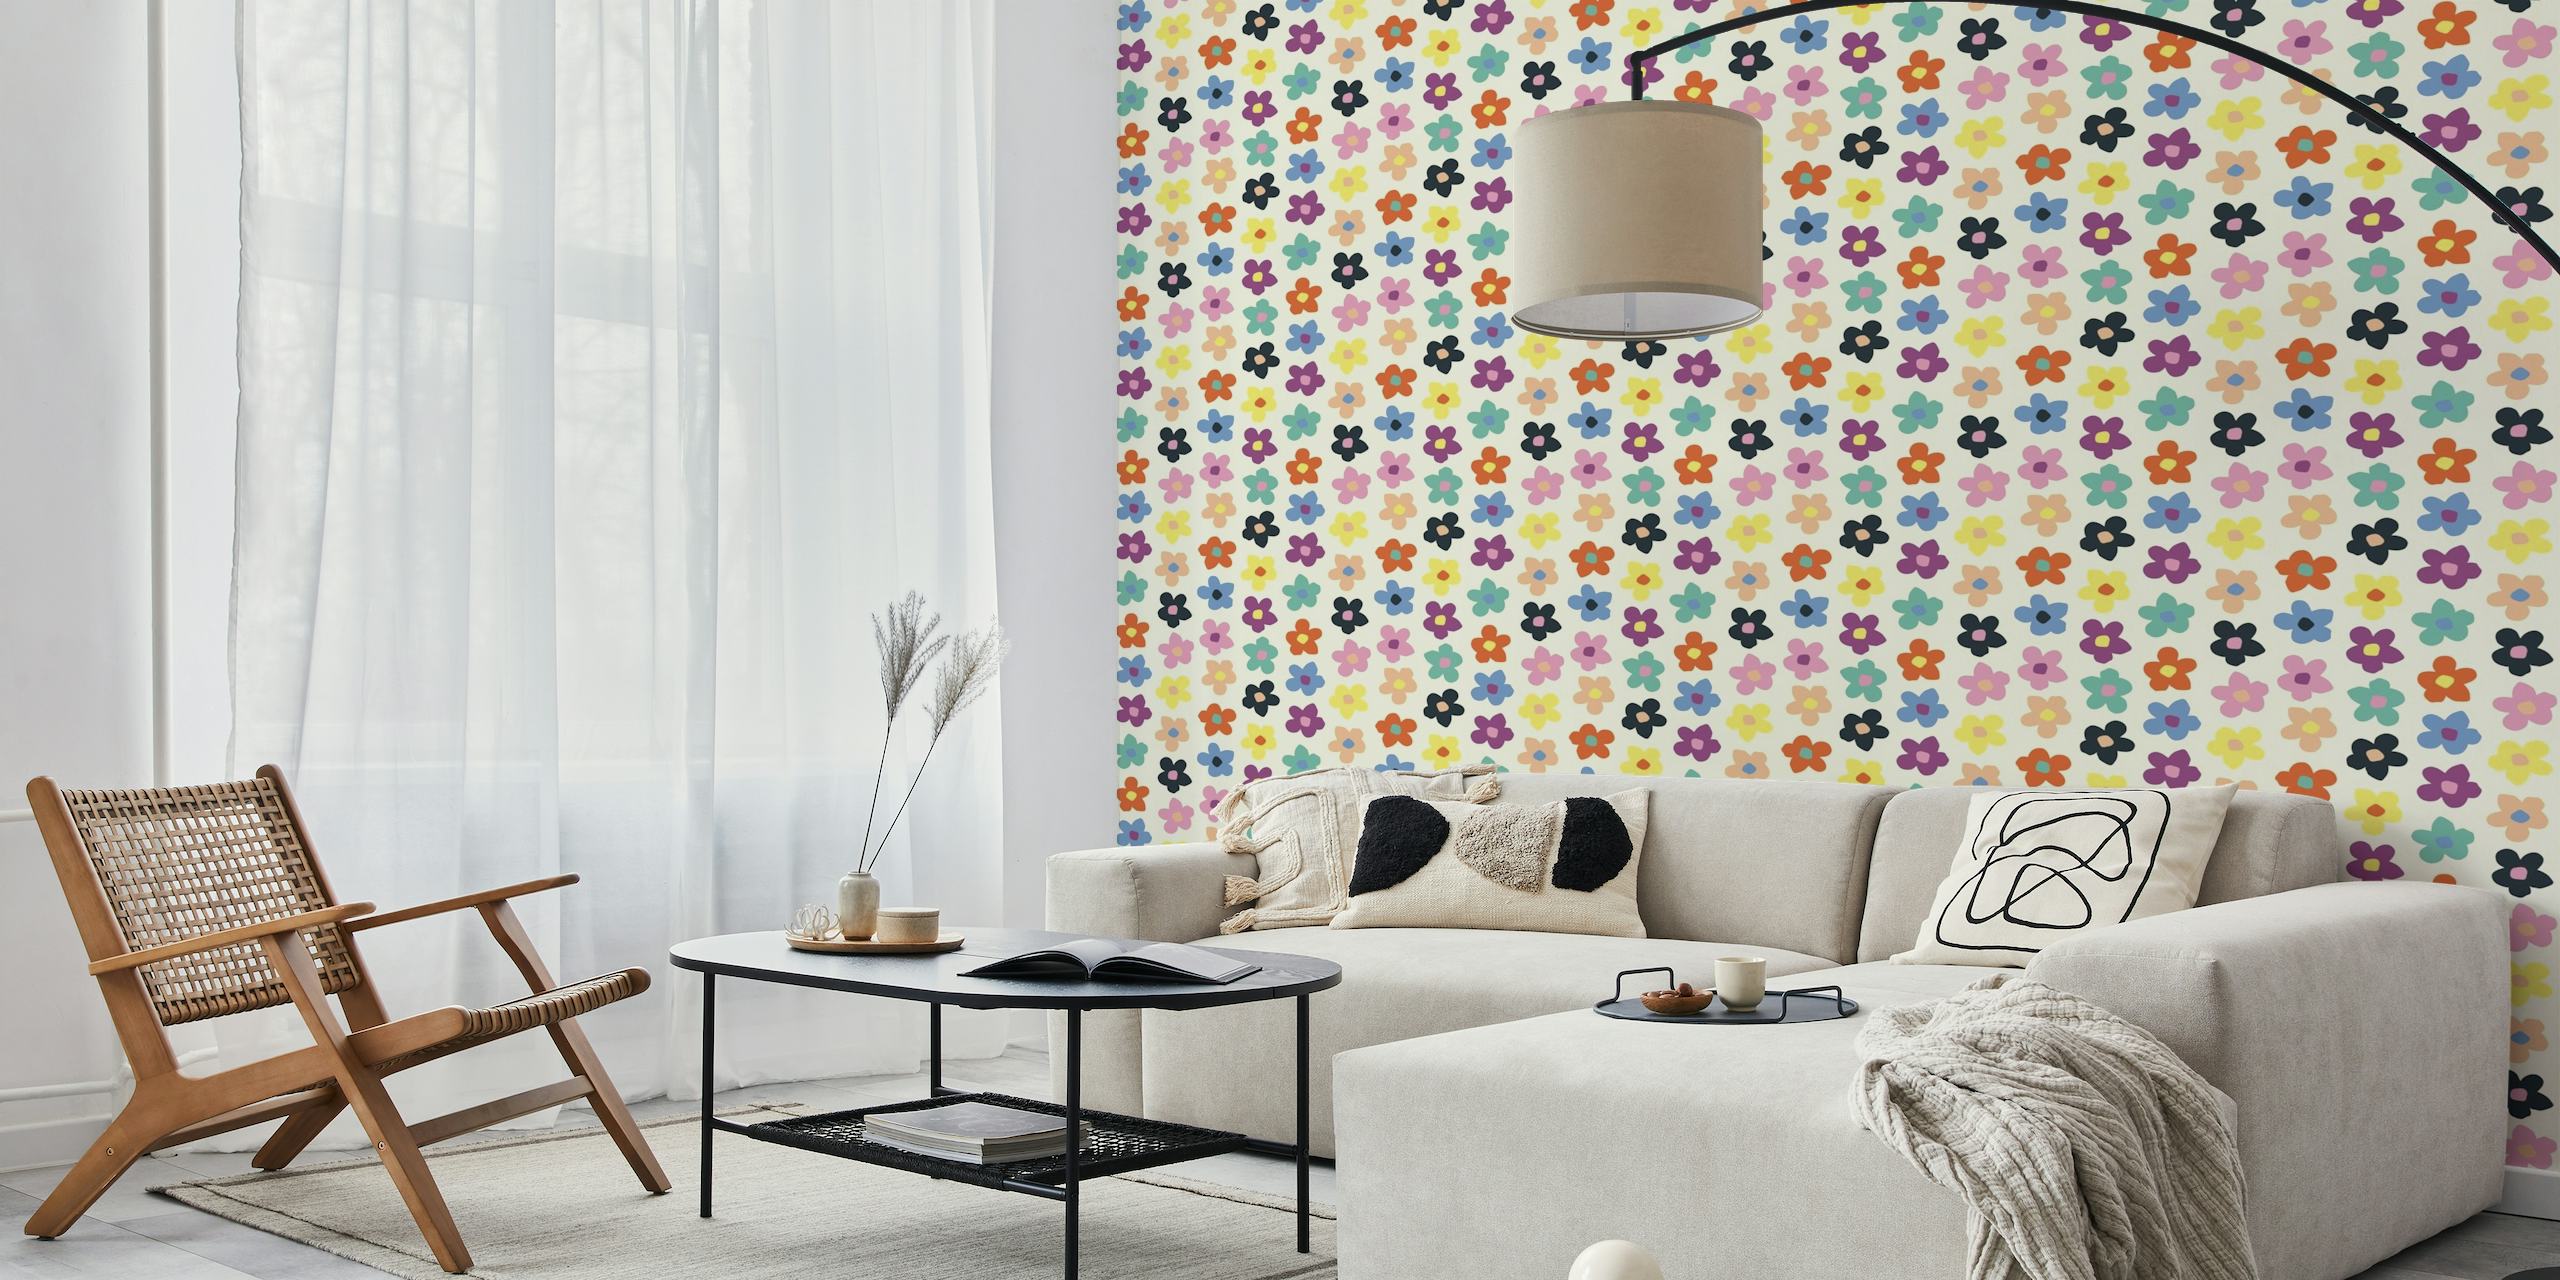 Margherite stilizzate in colori vivaci su una parete con sfondo color crema